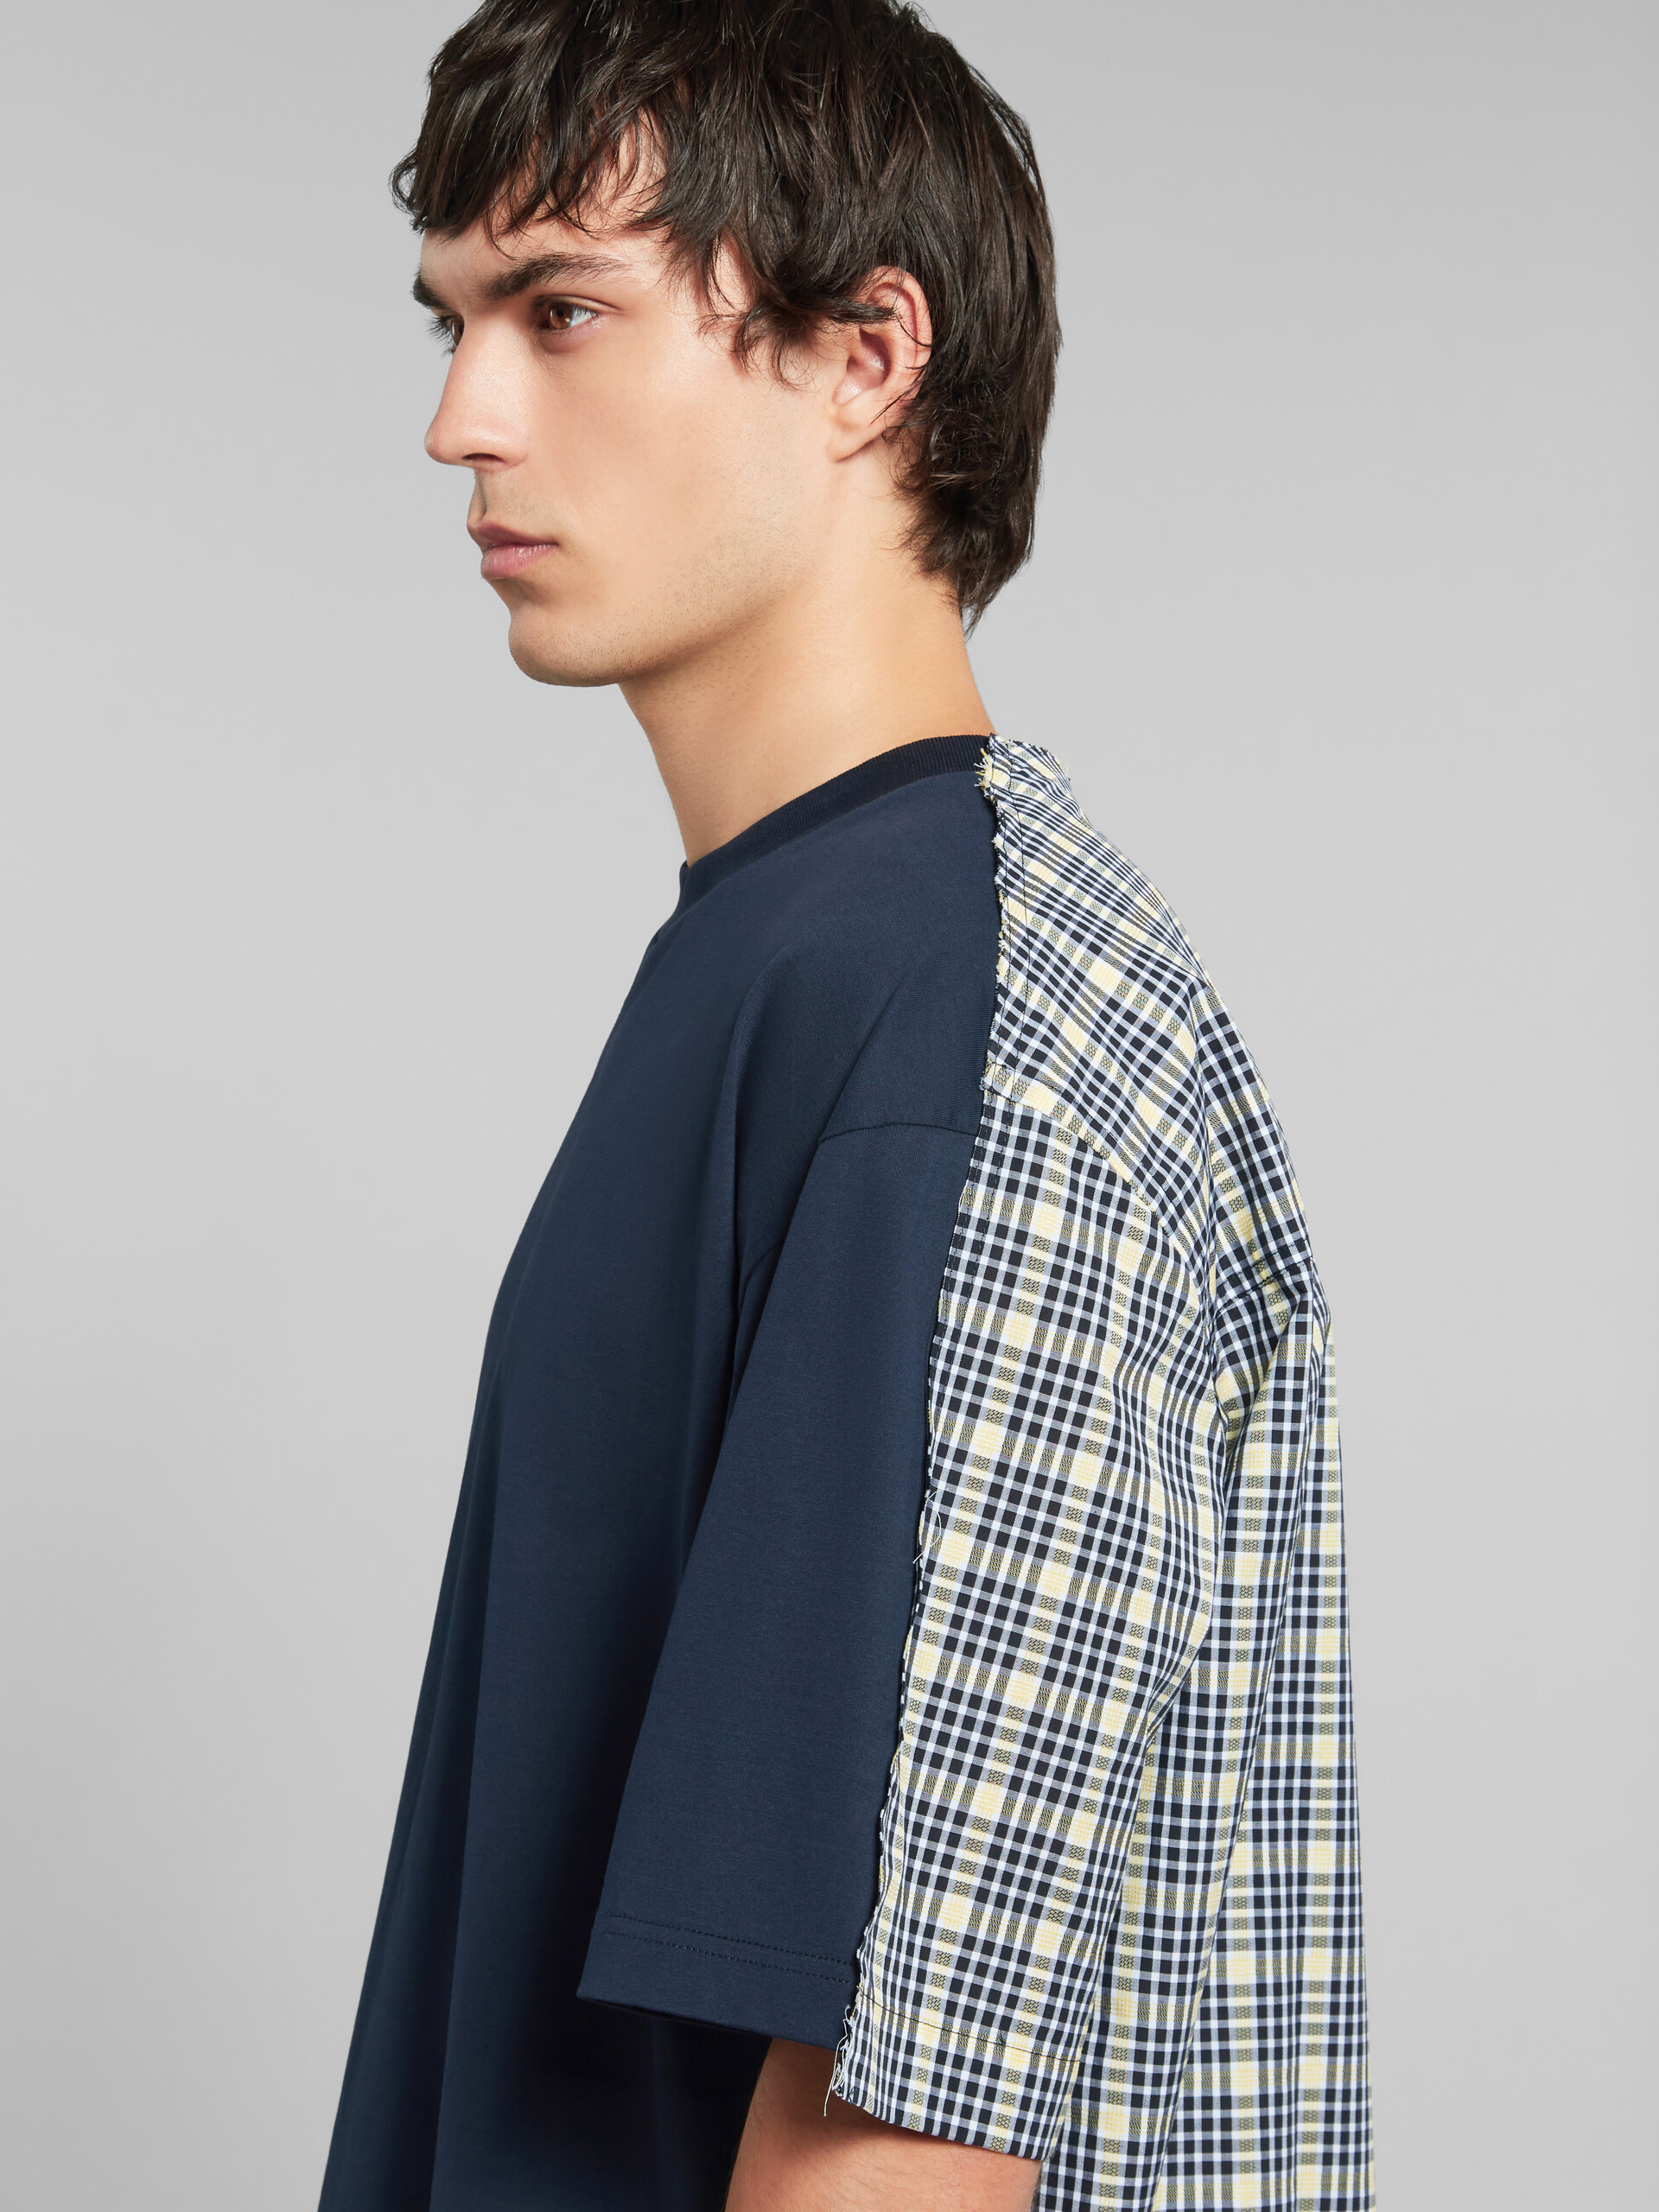 Camiseta azul intenso de algodón ecológico con rayas en la espalda - Camisetas - Image 4